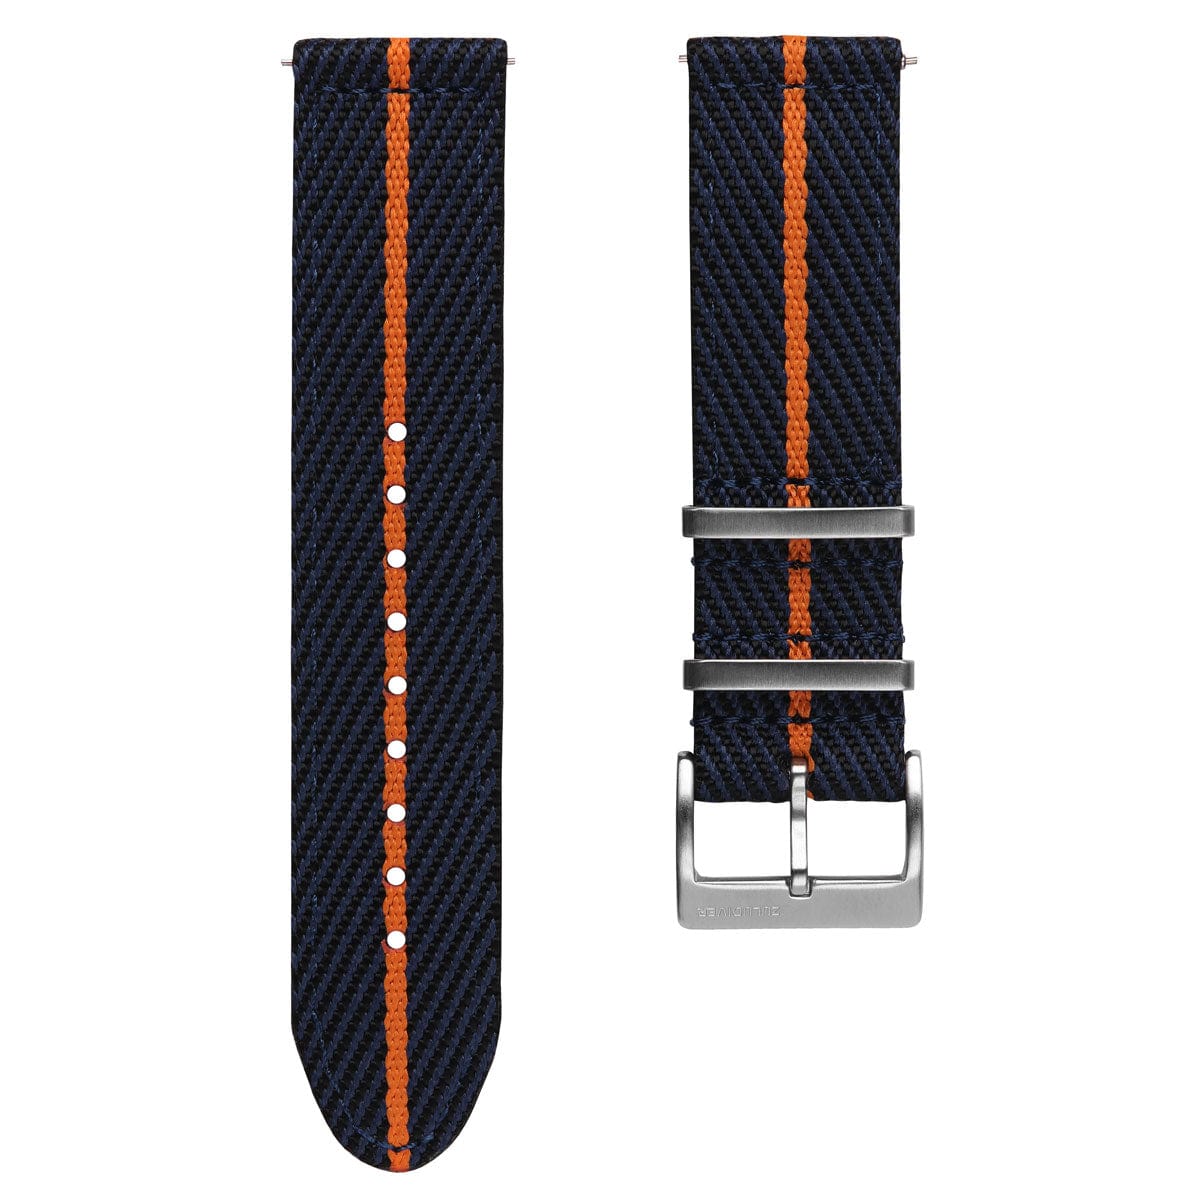 ZULUDIVER Seasalter Two-Piece NATO Watch Strap - Black, Blue, & Orange